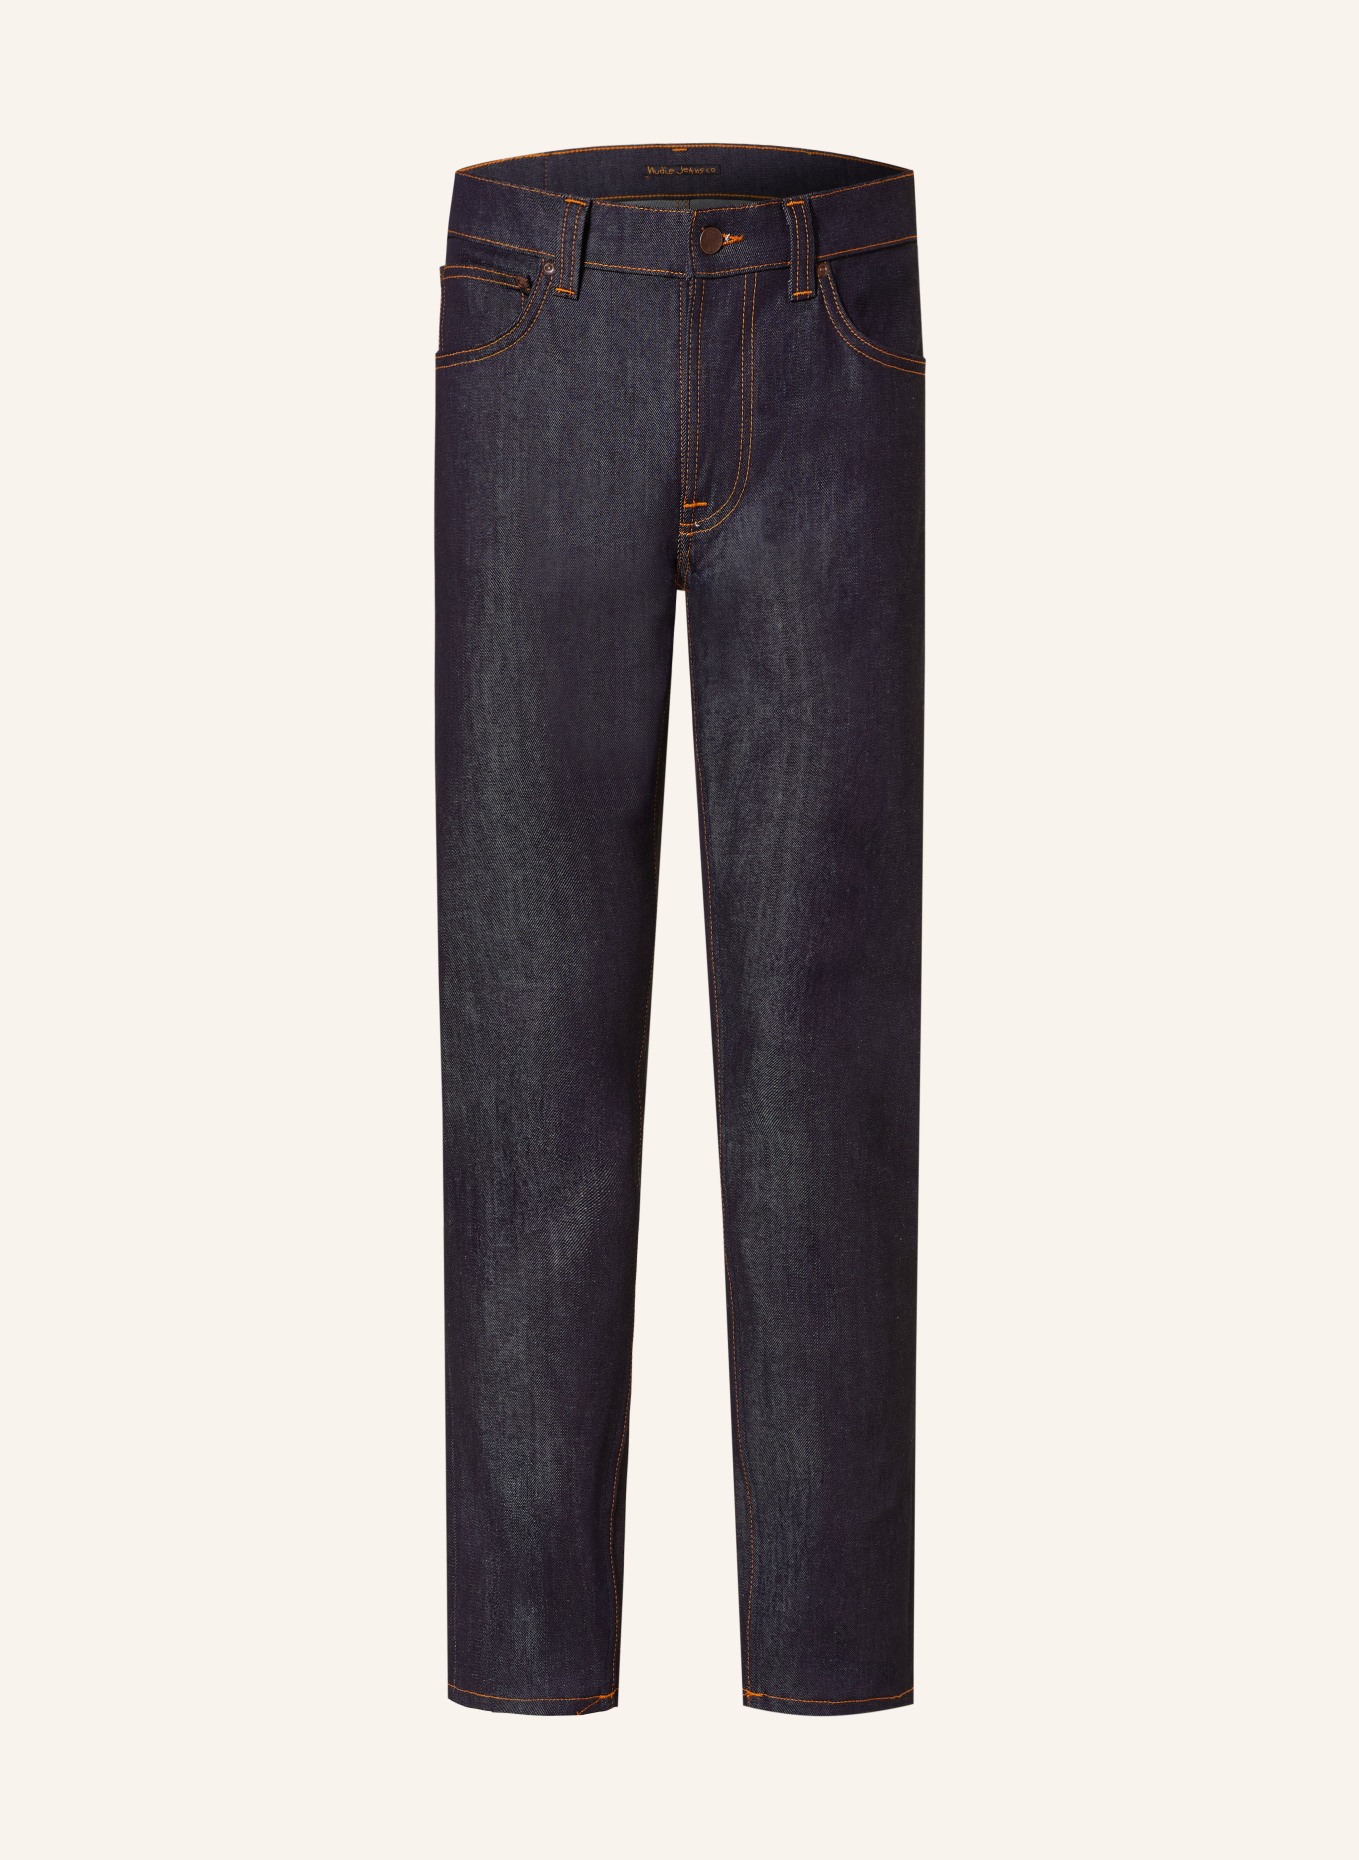 Nudie Jeans Jeans LEAN DEAN, Farbe: DRY 16 DIPS (Bild 1)